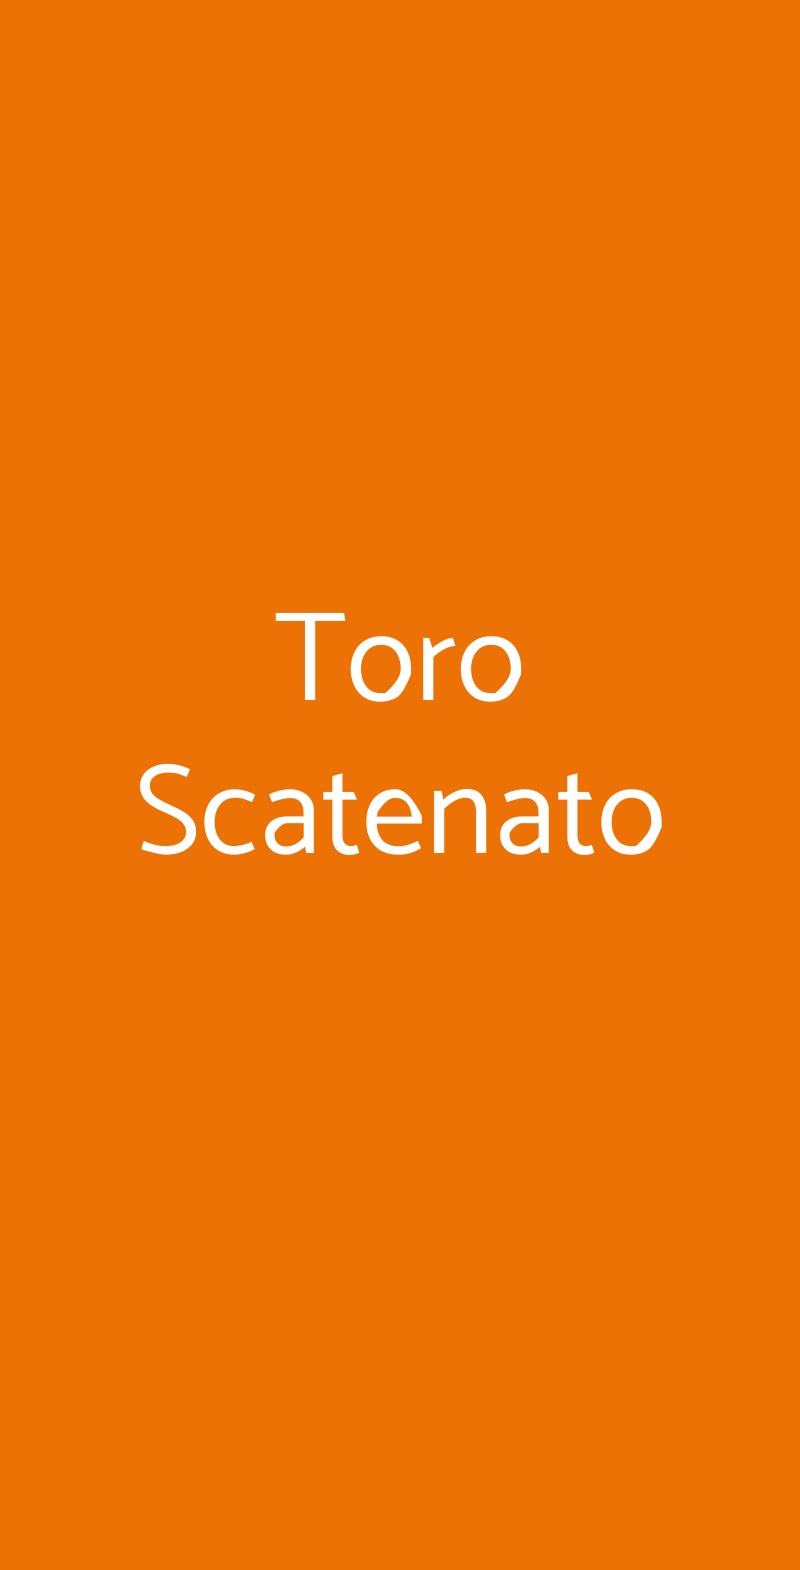 Toro Scatenato Torino menù 1 pagina